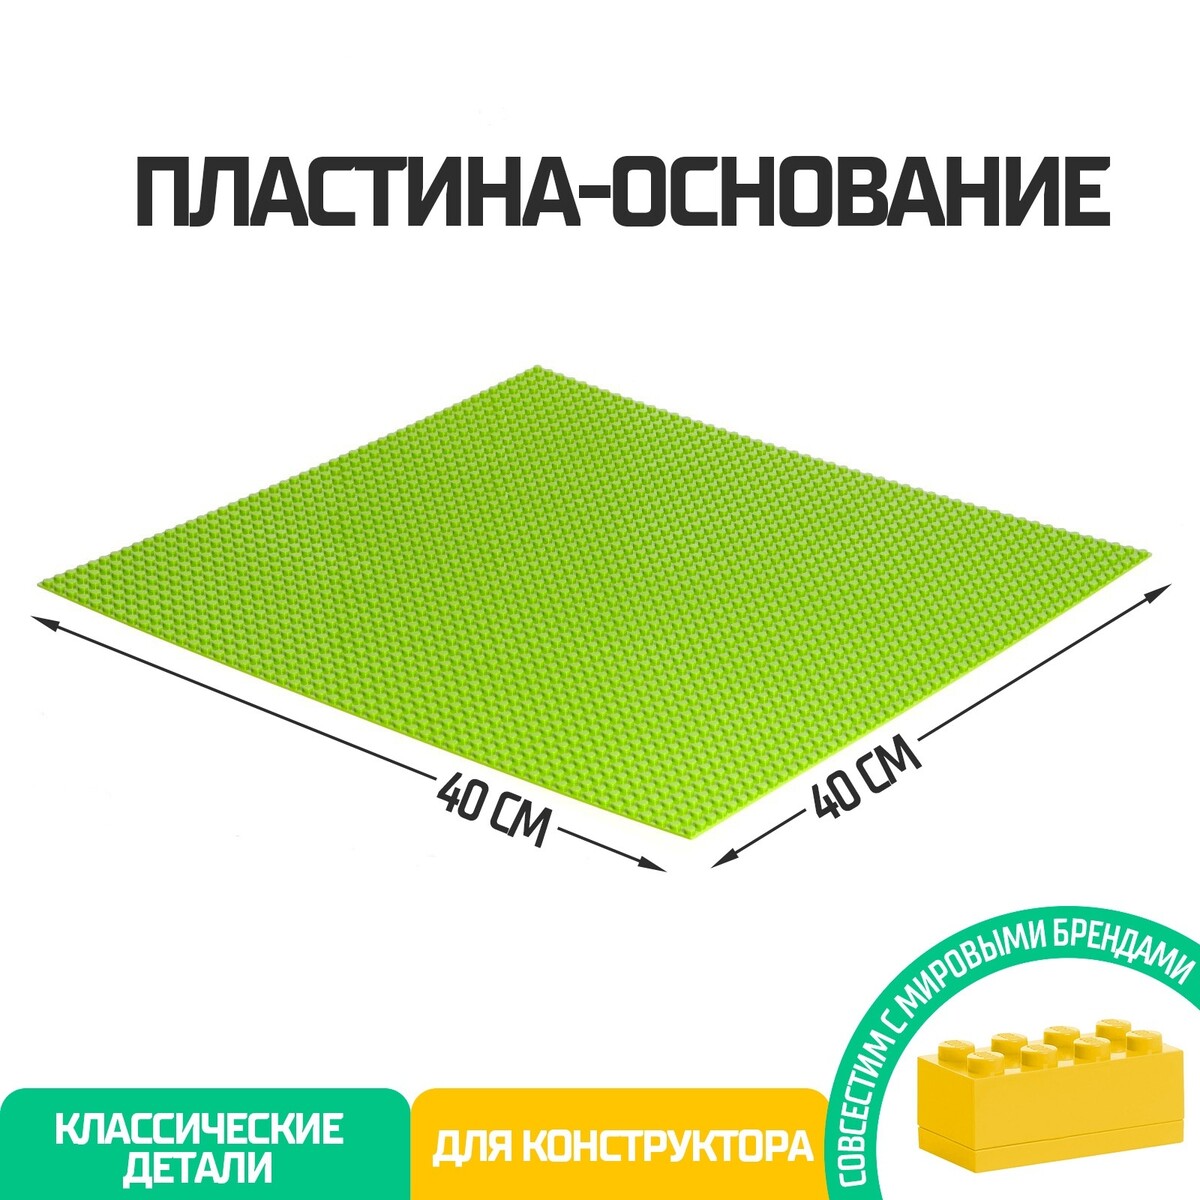 Пластина-основание для конструктора, 40 × 40 см, цвет салатовый пластина основание для конструктора 12 8 × 12 8 см салатовый